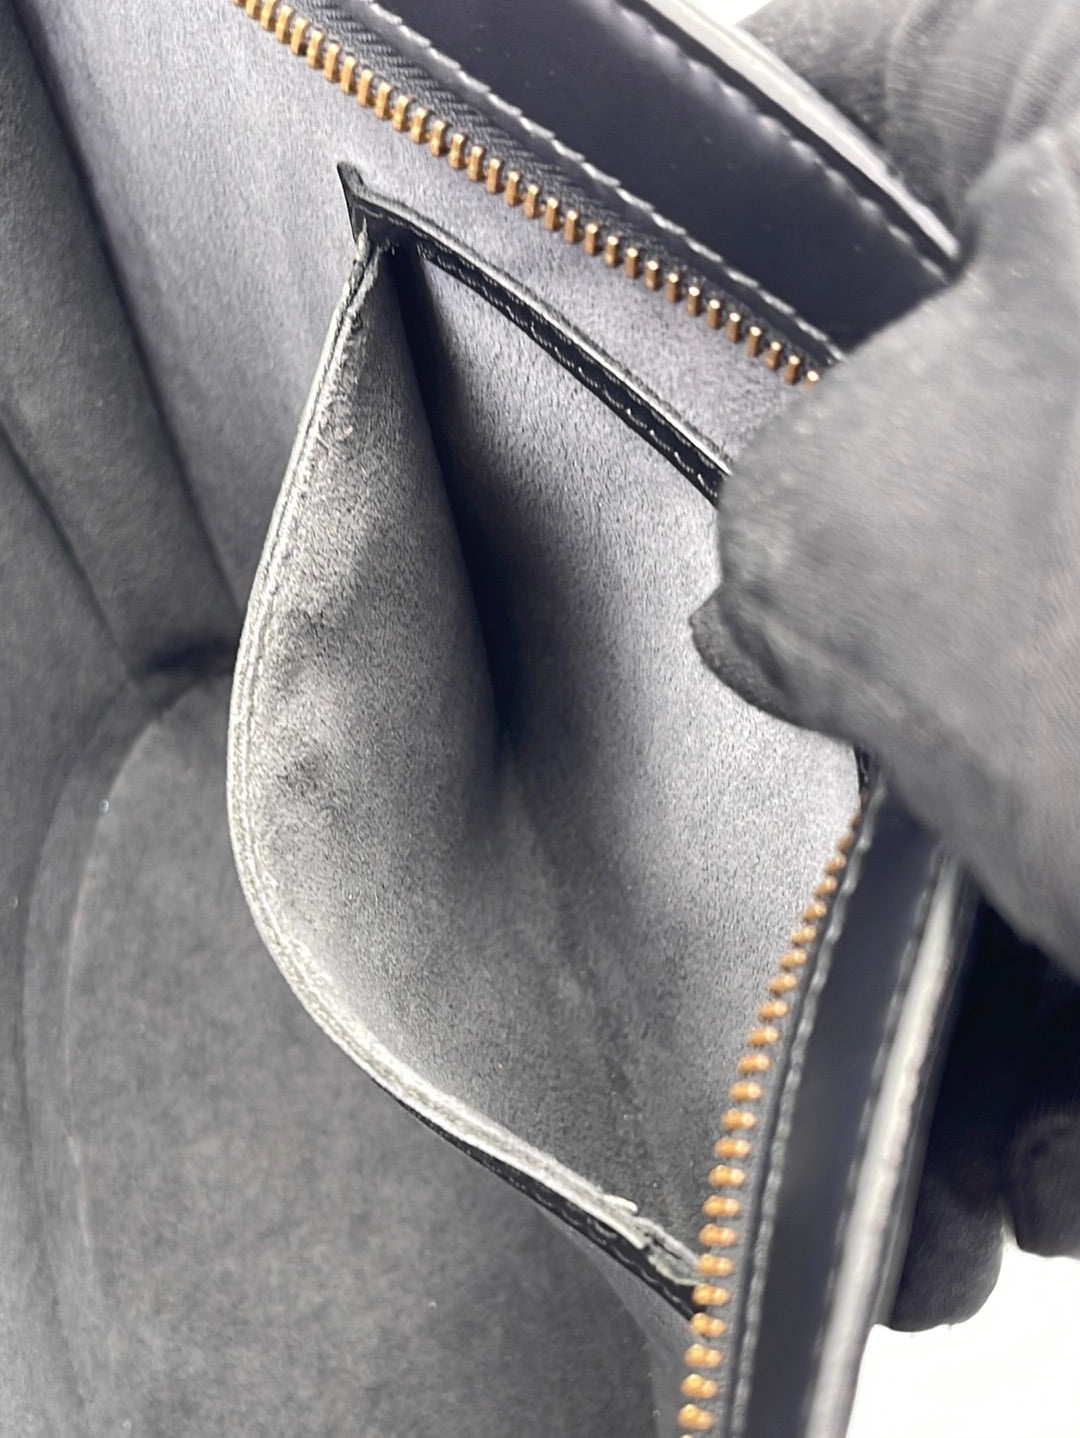 Louis Vuitton Saint Jacques PM Short Strap Bag in Black Epi and